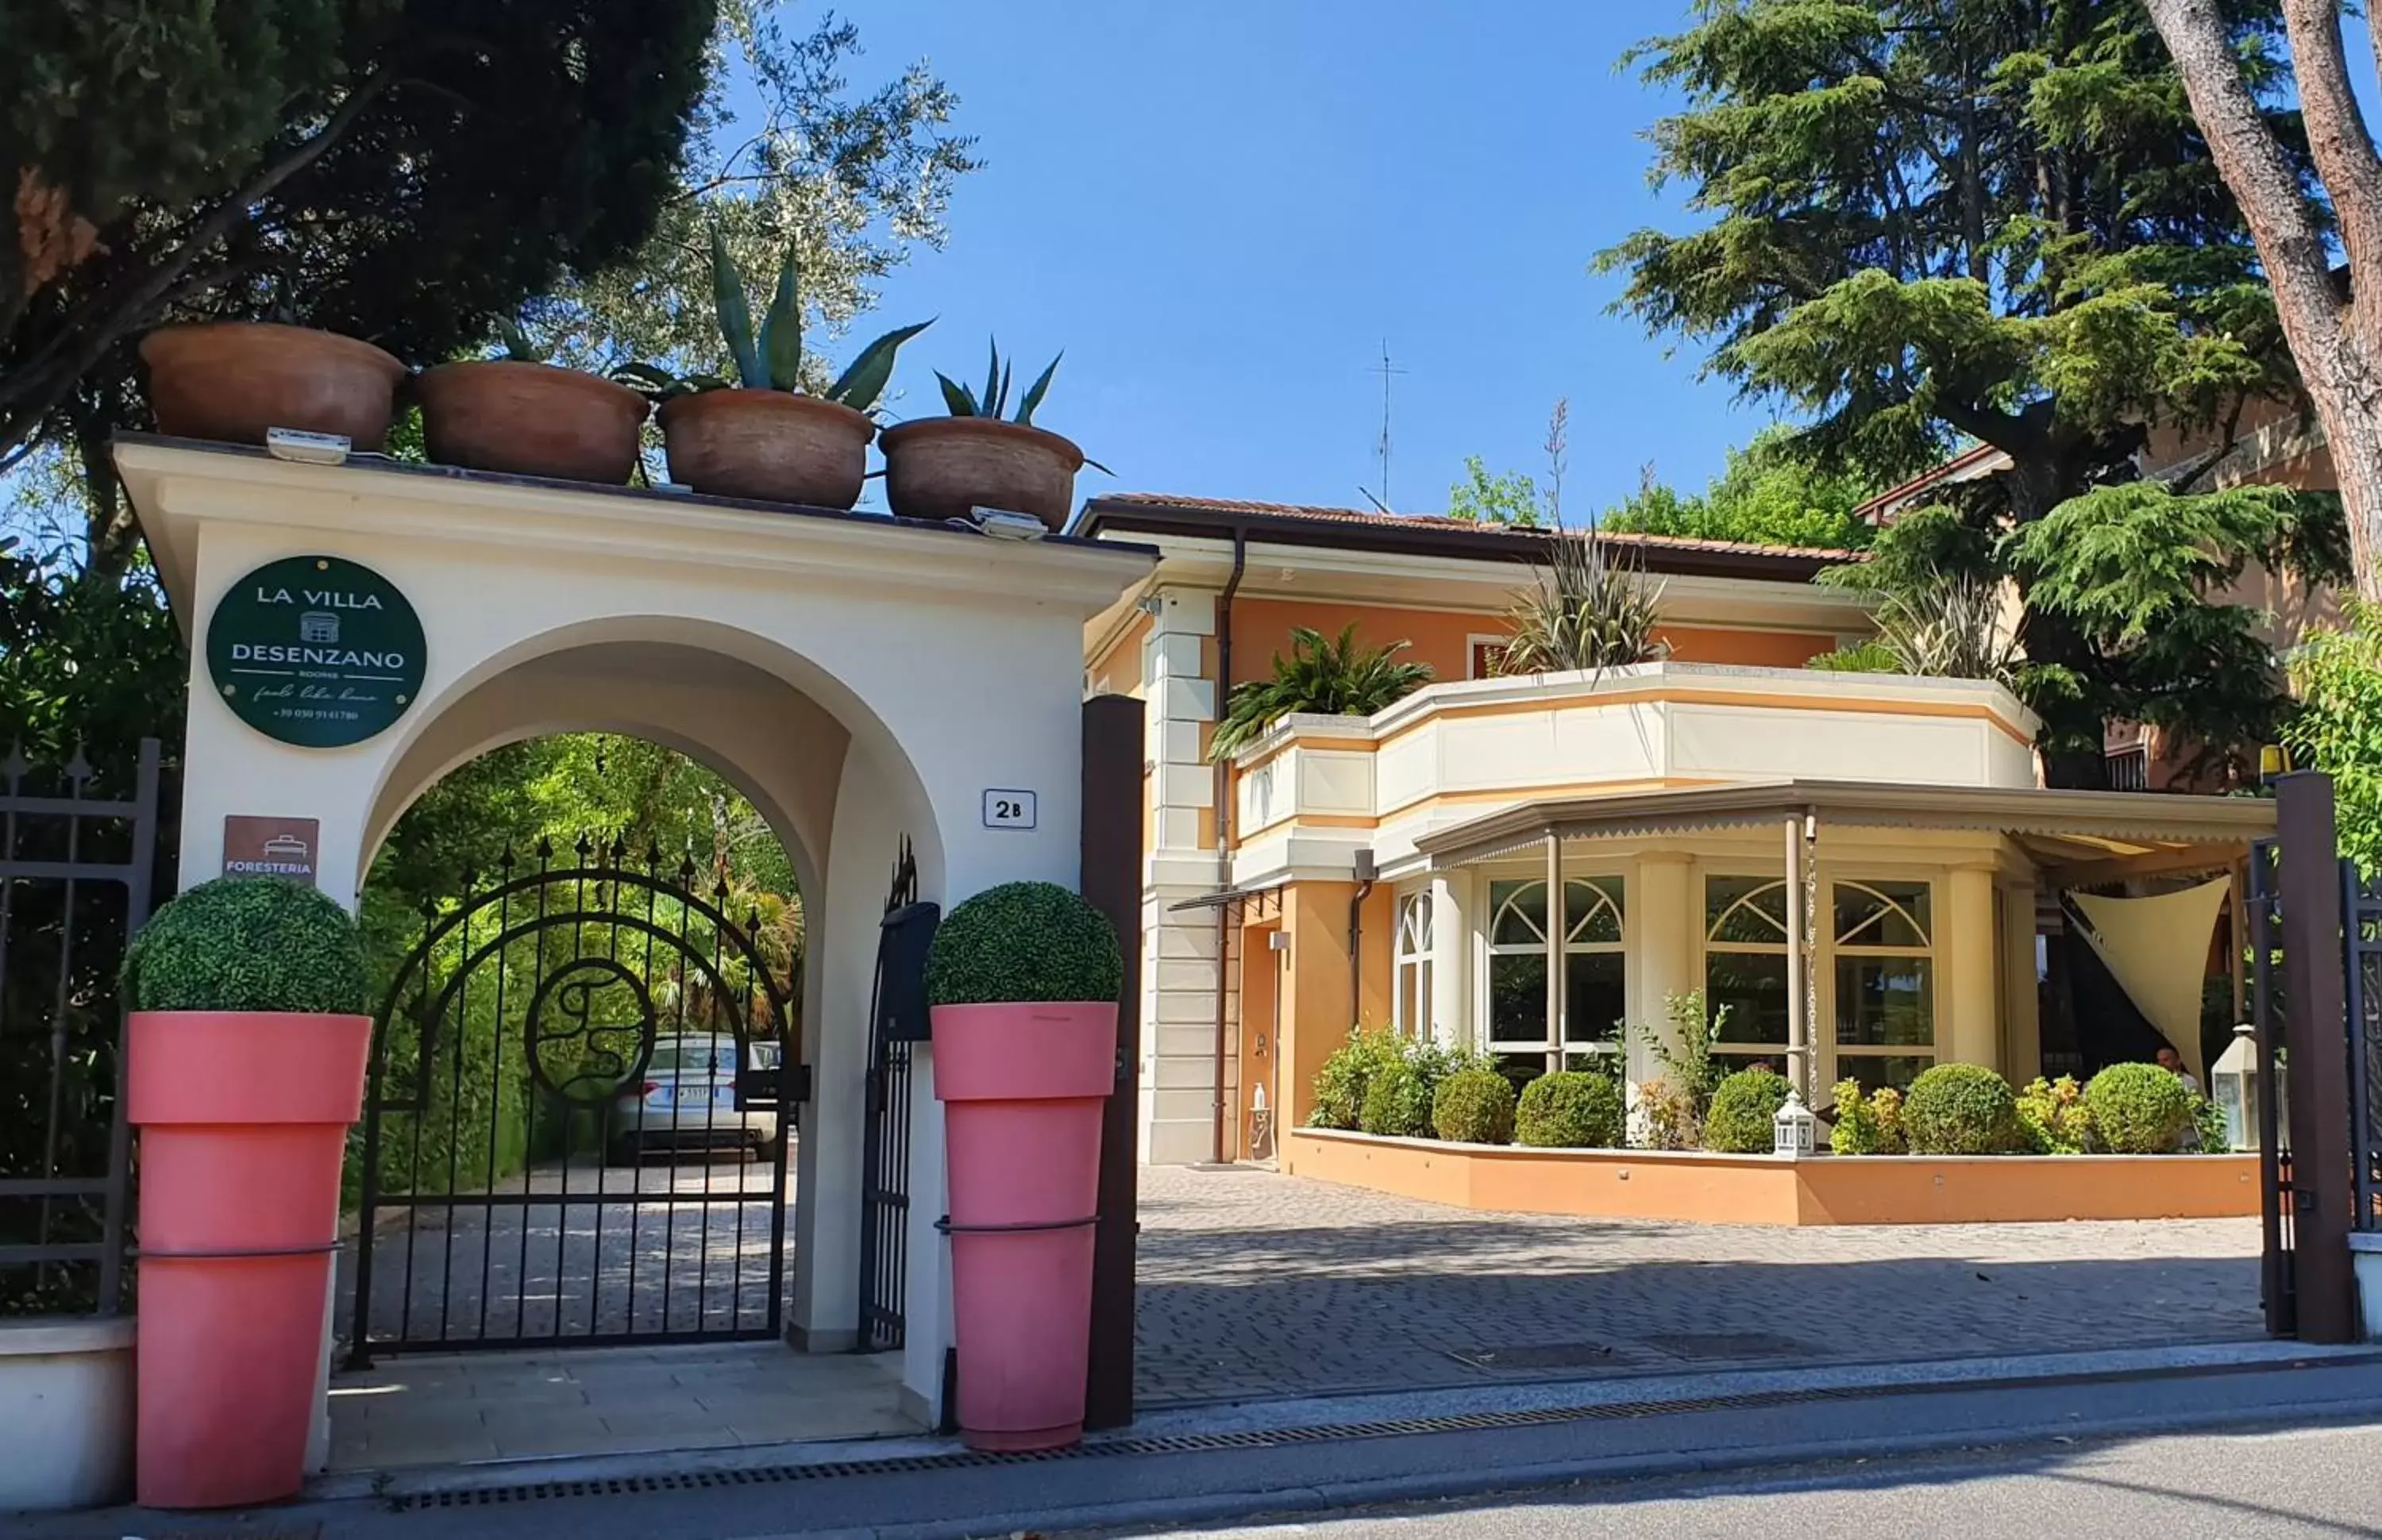 Facade/entrance in La Villa Desenzano